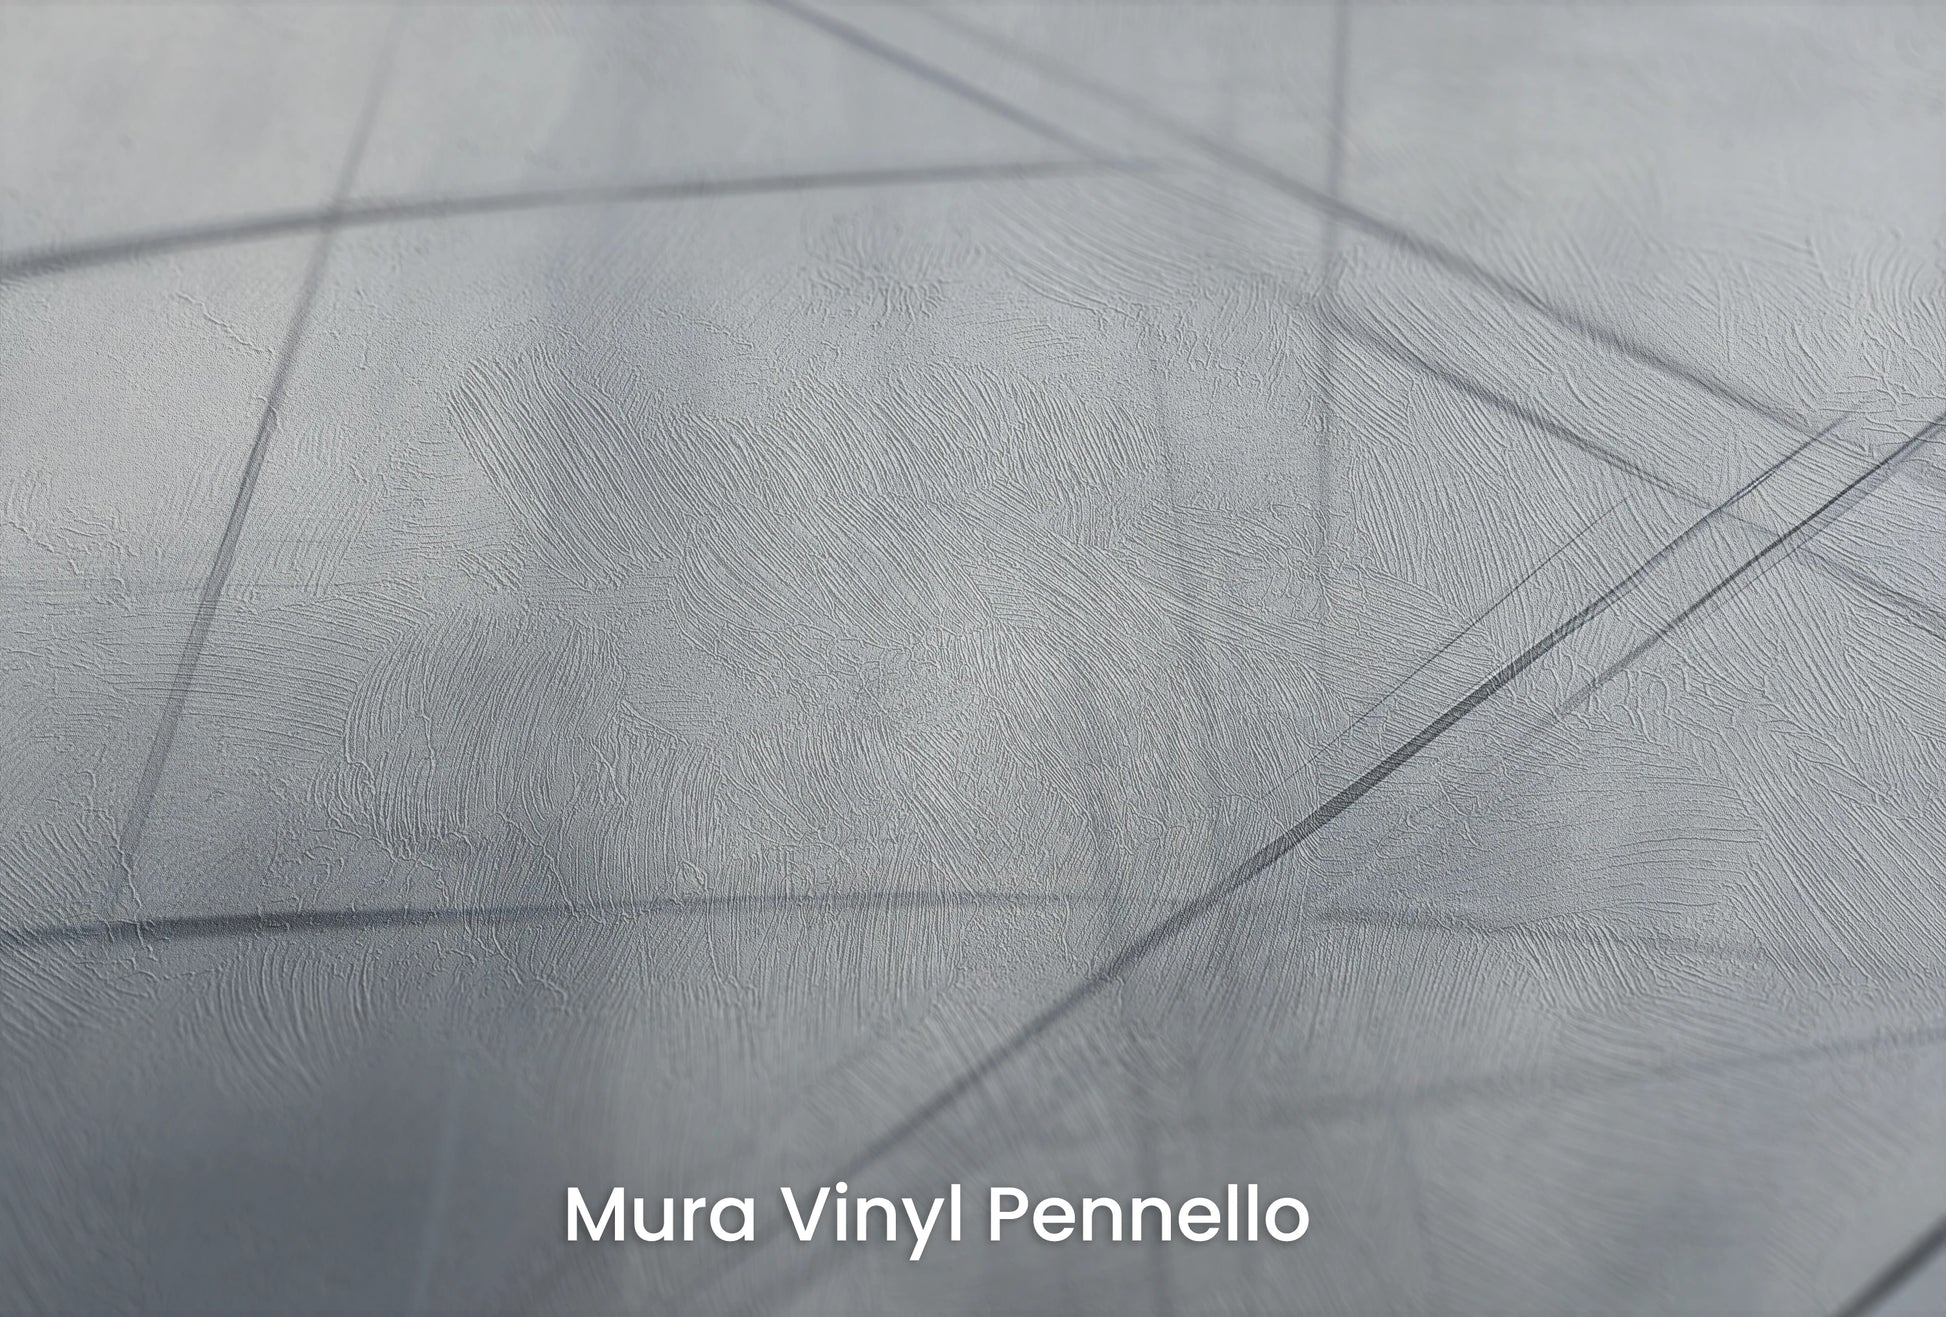 Zbliżenie na artystyczną fototapetę o nazwie Ephemeral Lines na podłożu Mura Vinyl Pennello - faktura pociągnięć pędzla malarskiego.